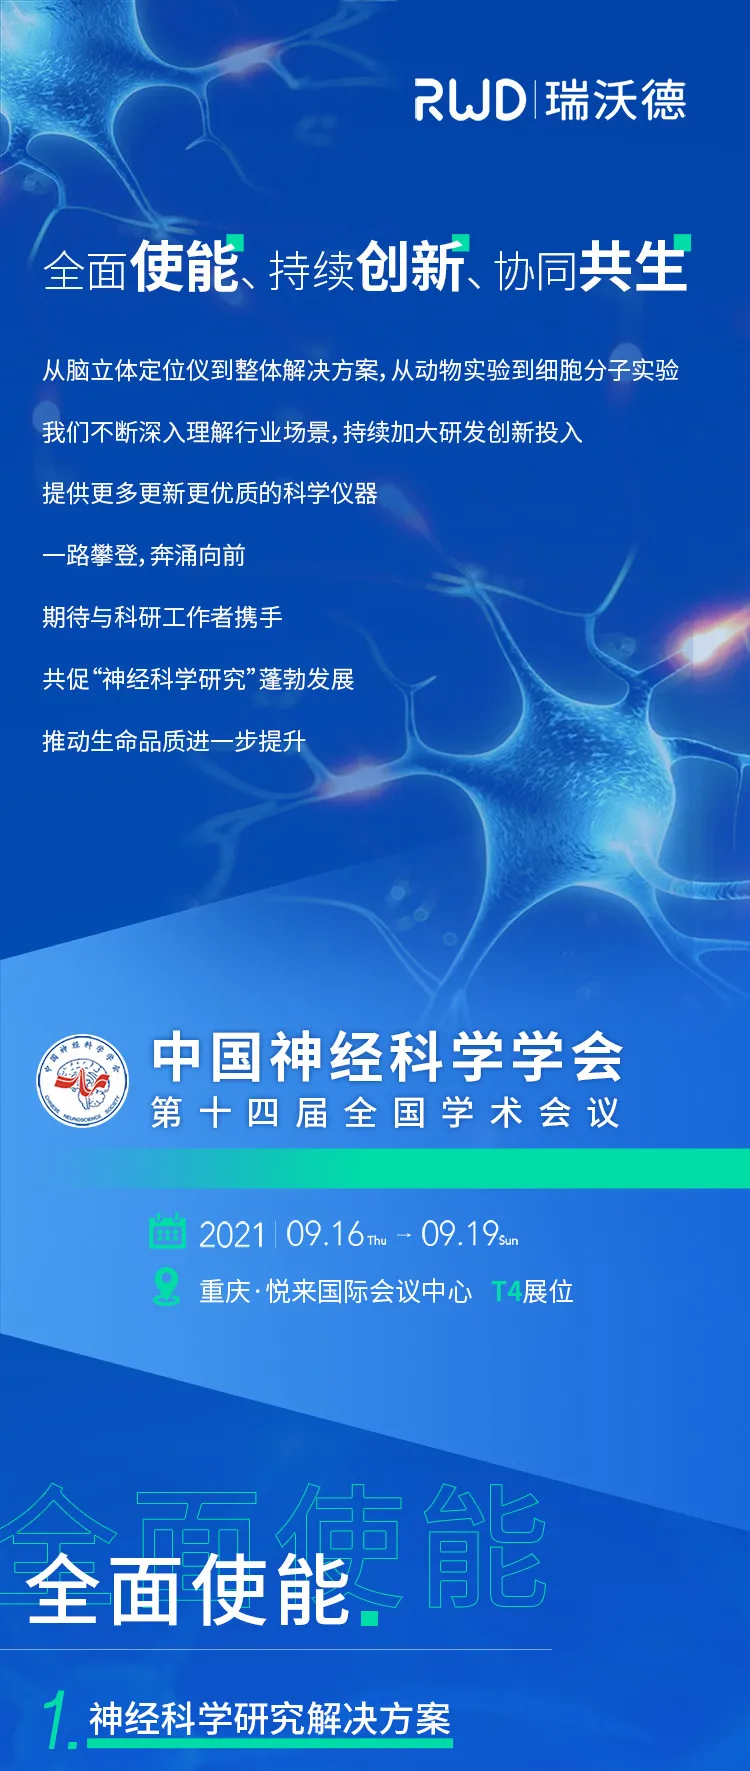 <em>会议邀请︱瑞沃德与您相约中国神经科学学会第十四届全国学术会议</em>